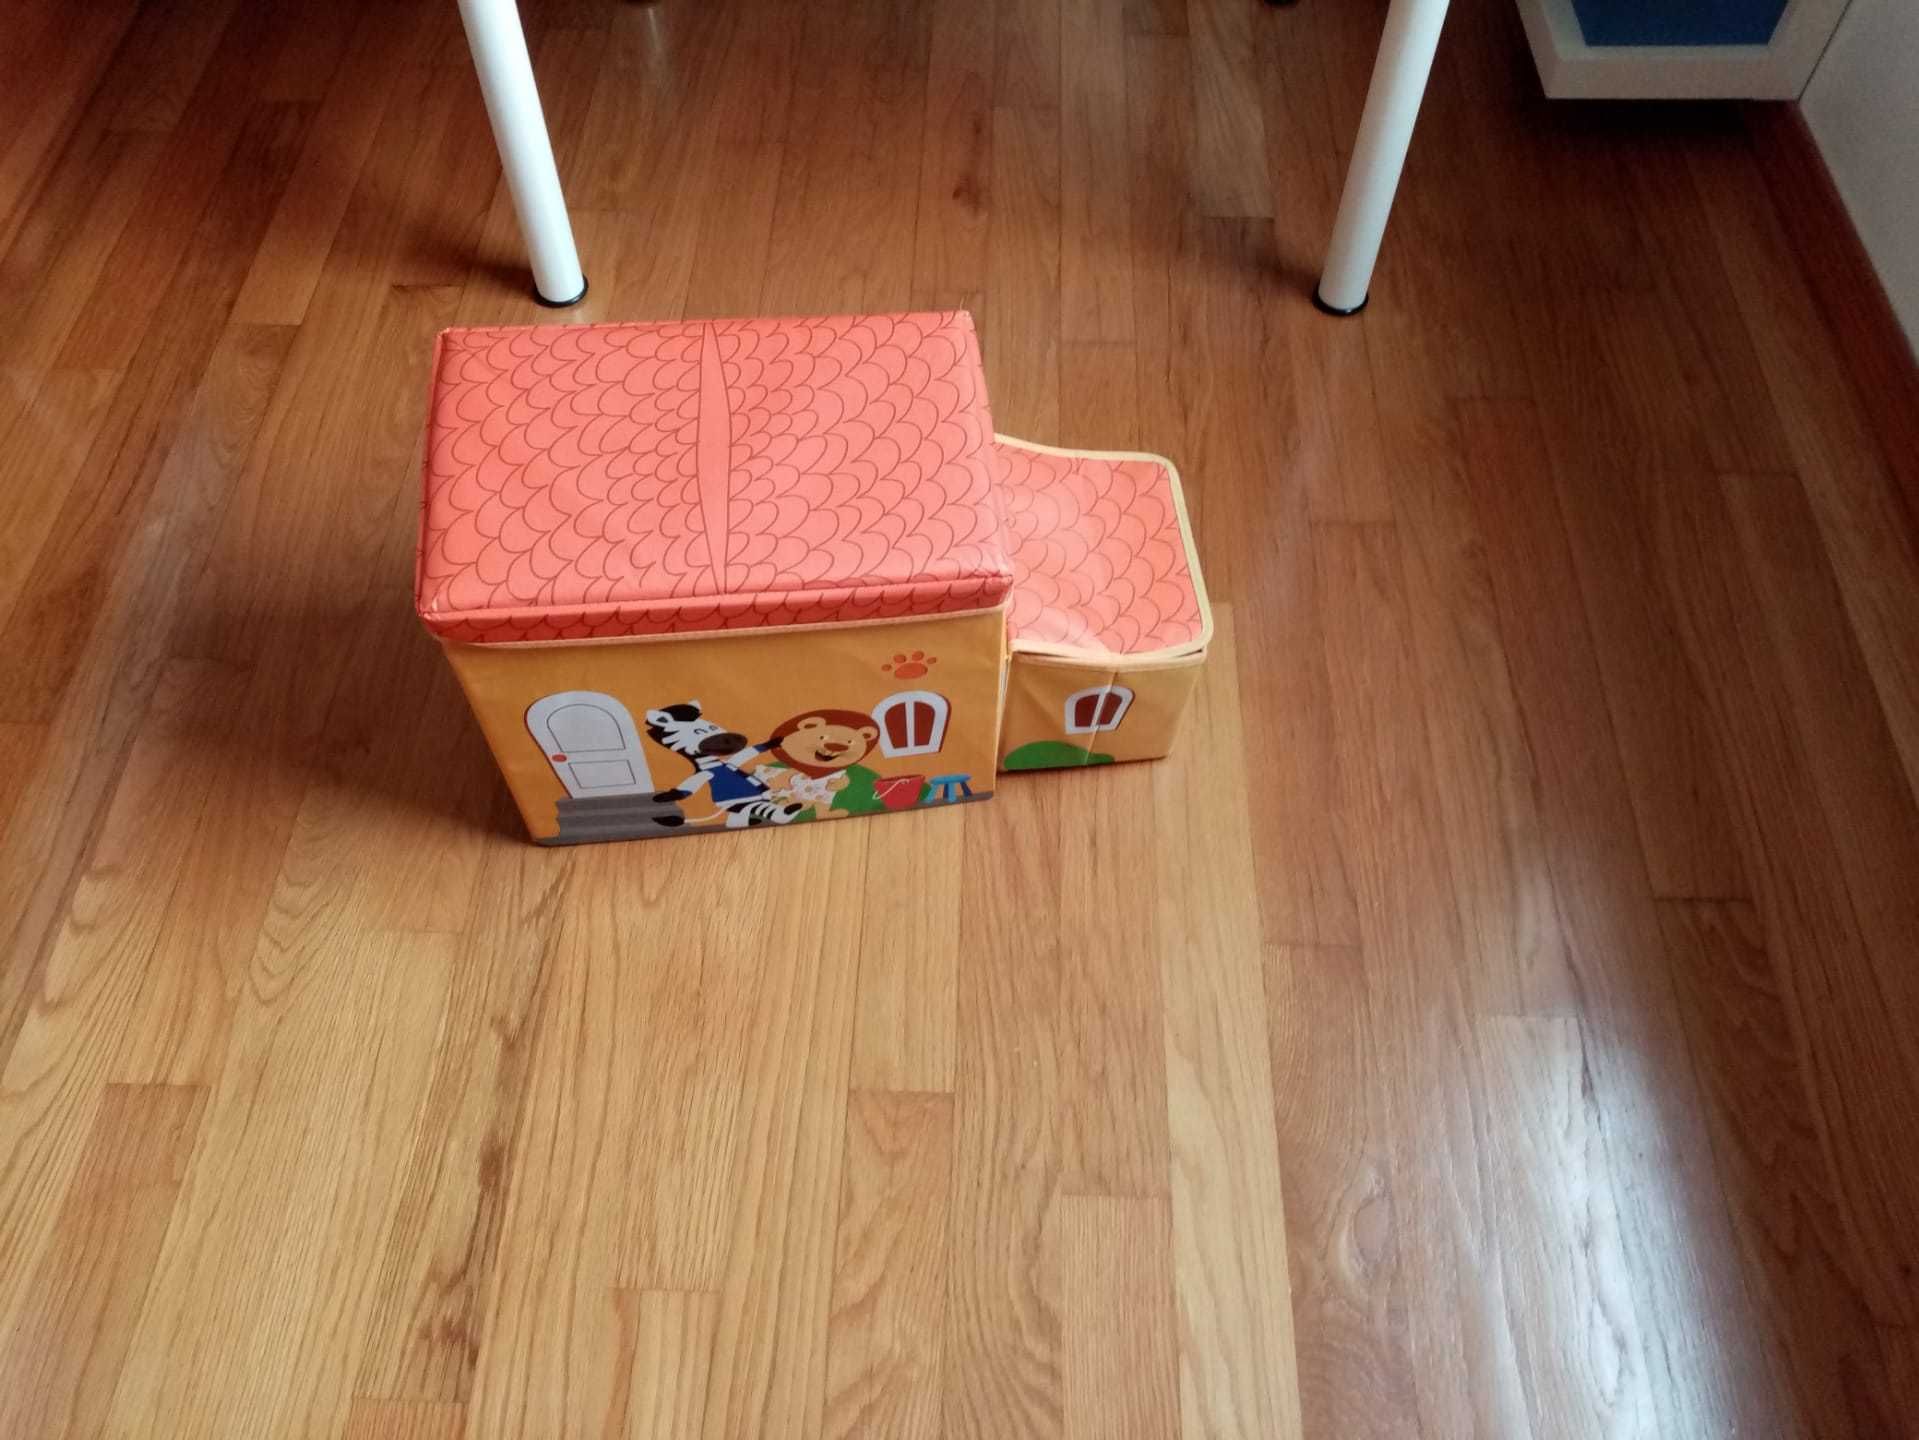 Caixa de arrumação de brinquedos em forma de carro